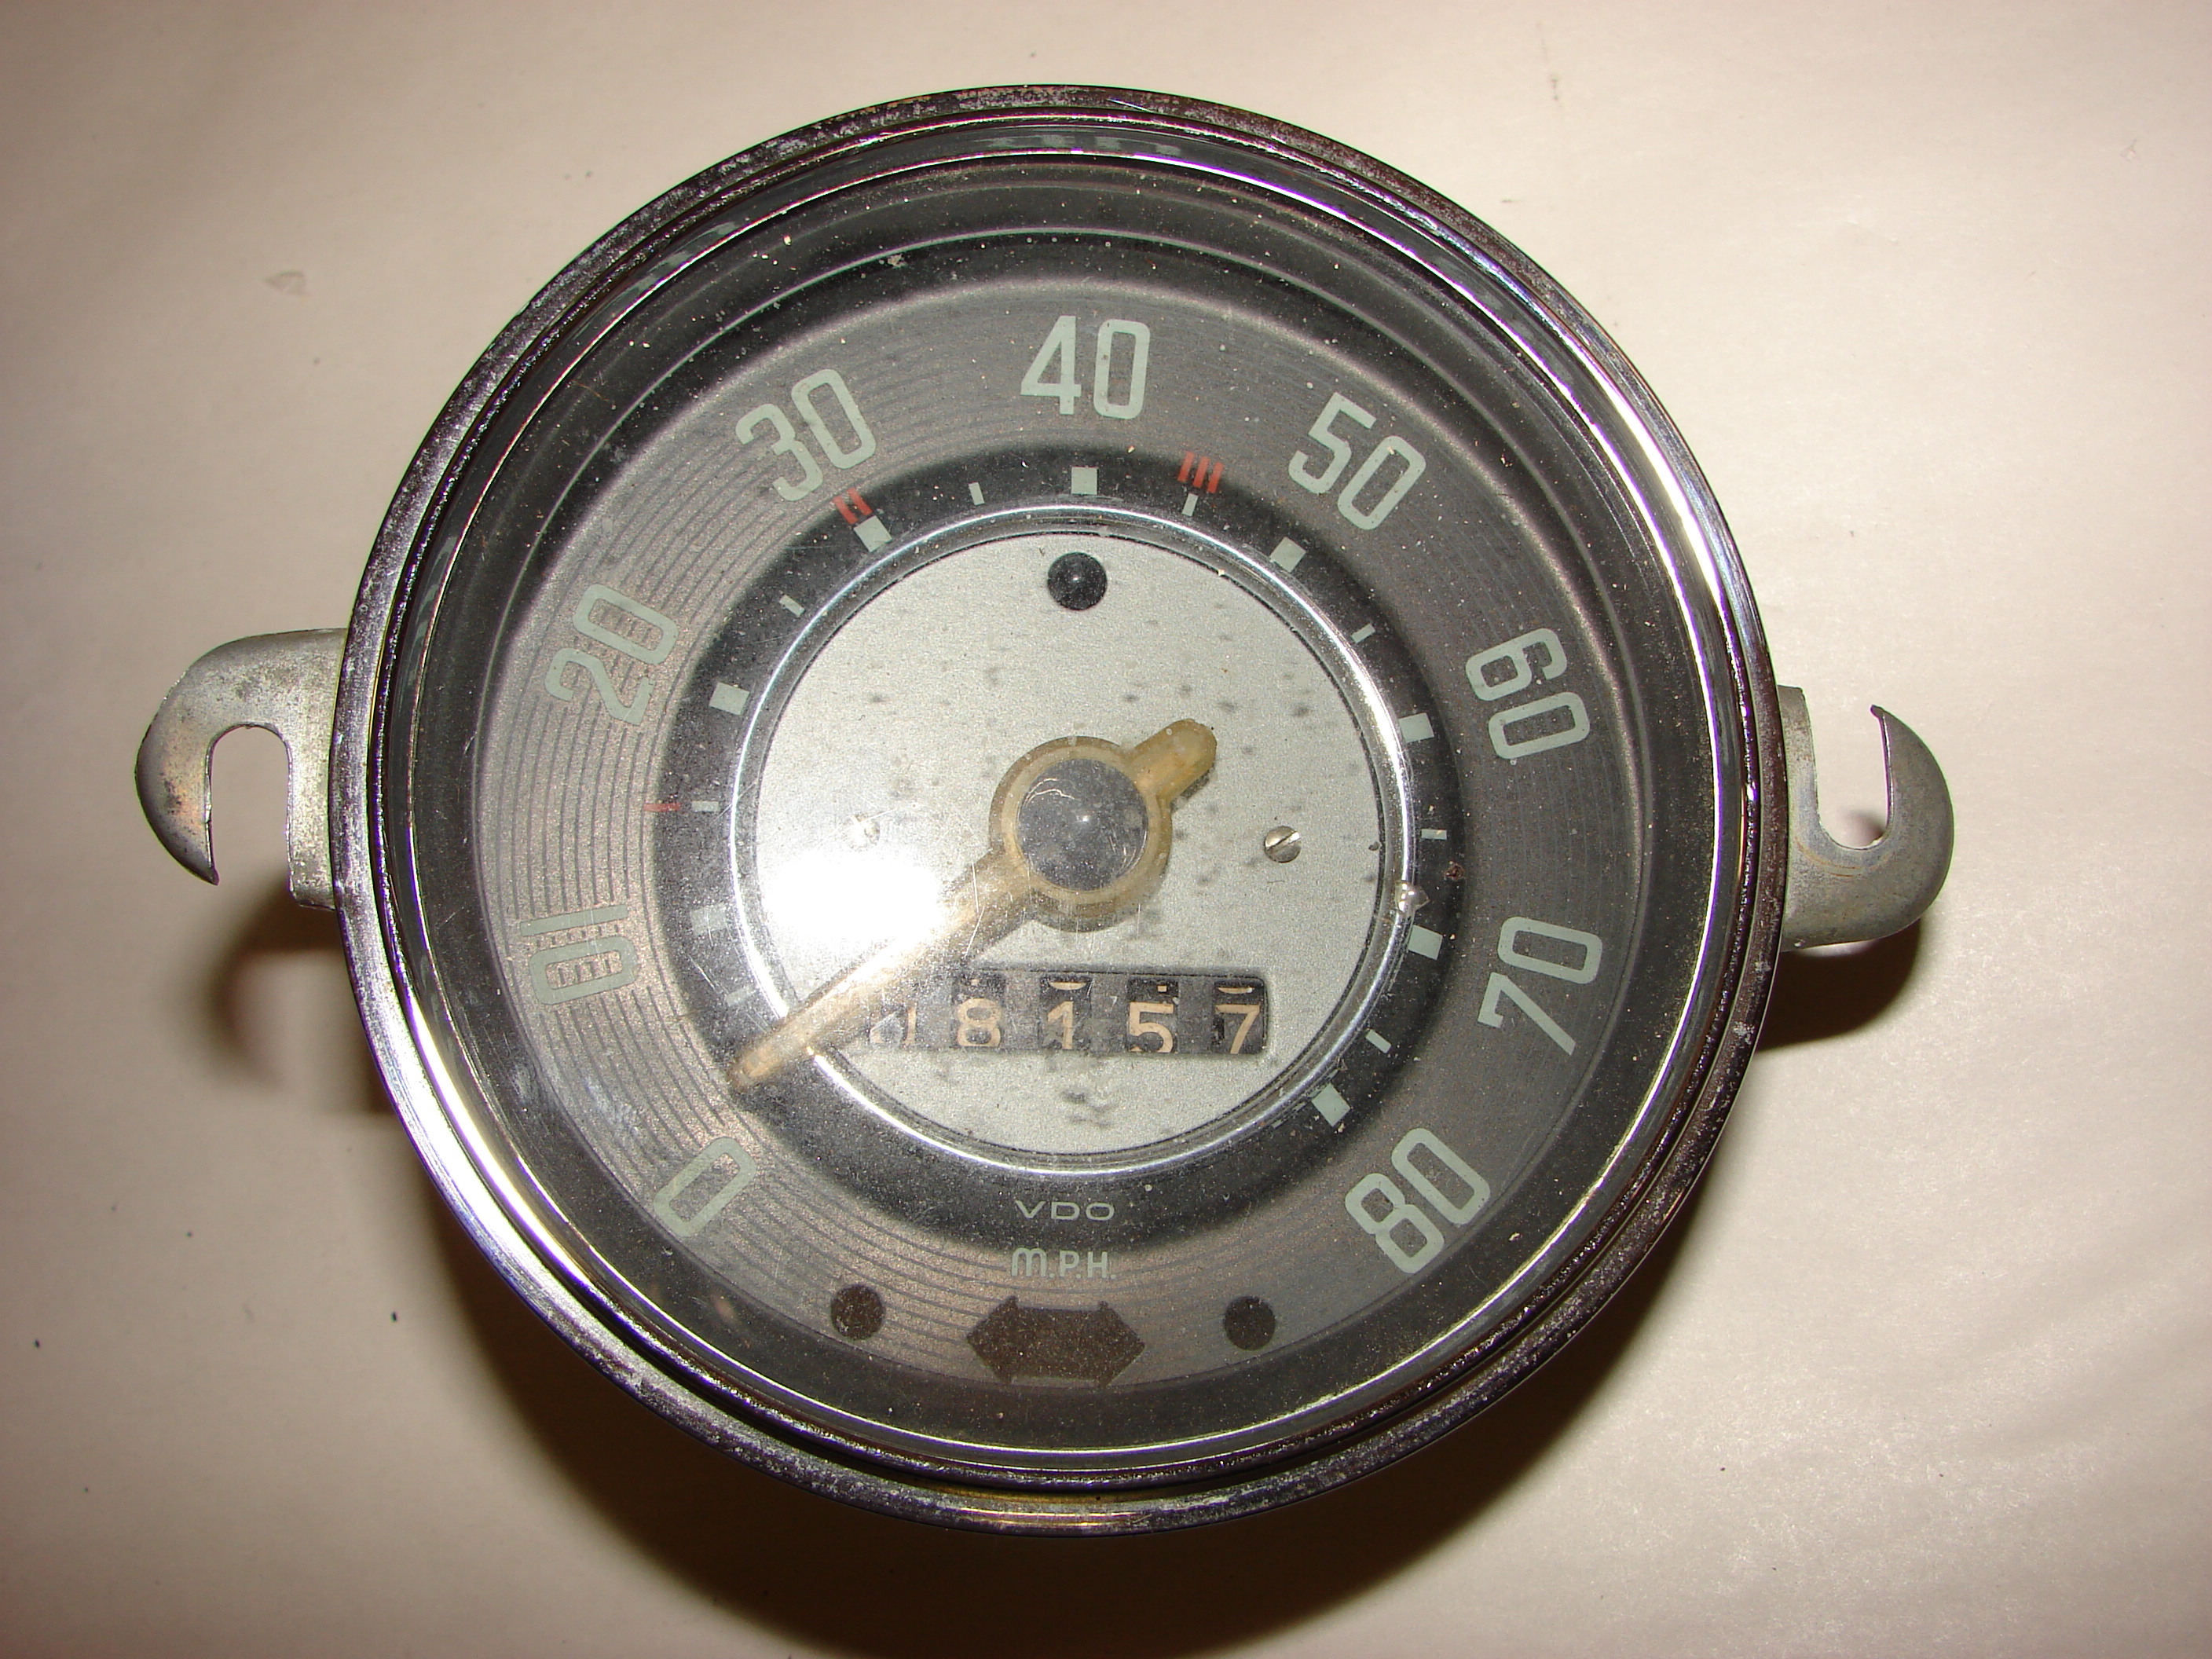 Small basic speedometer